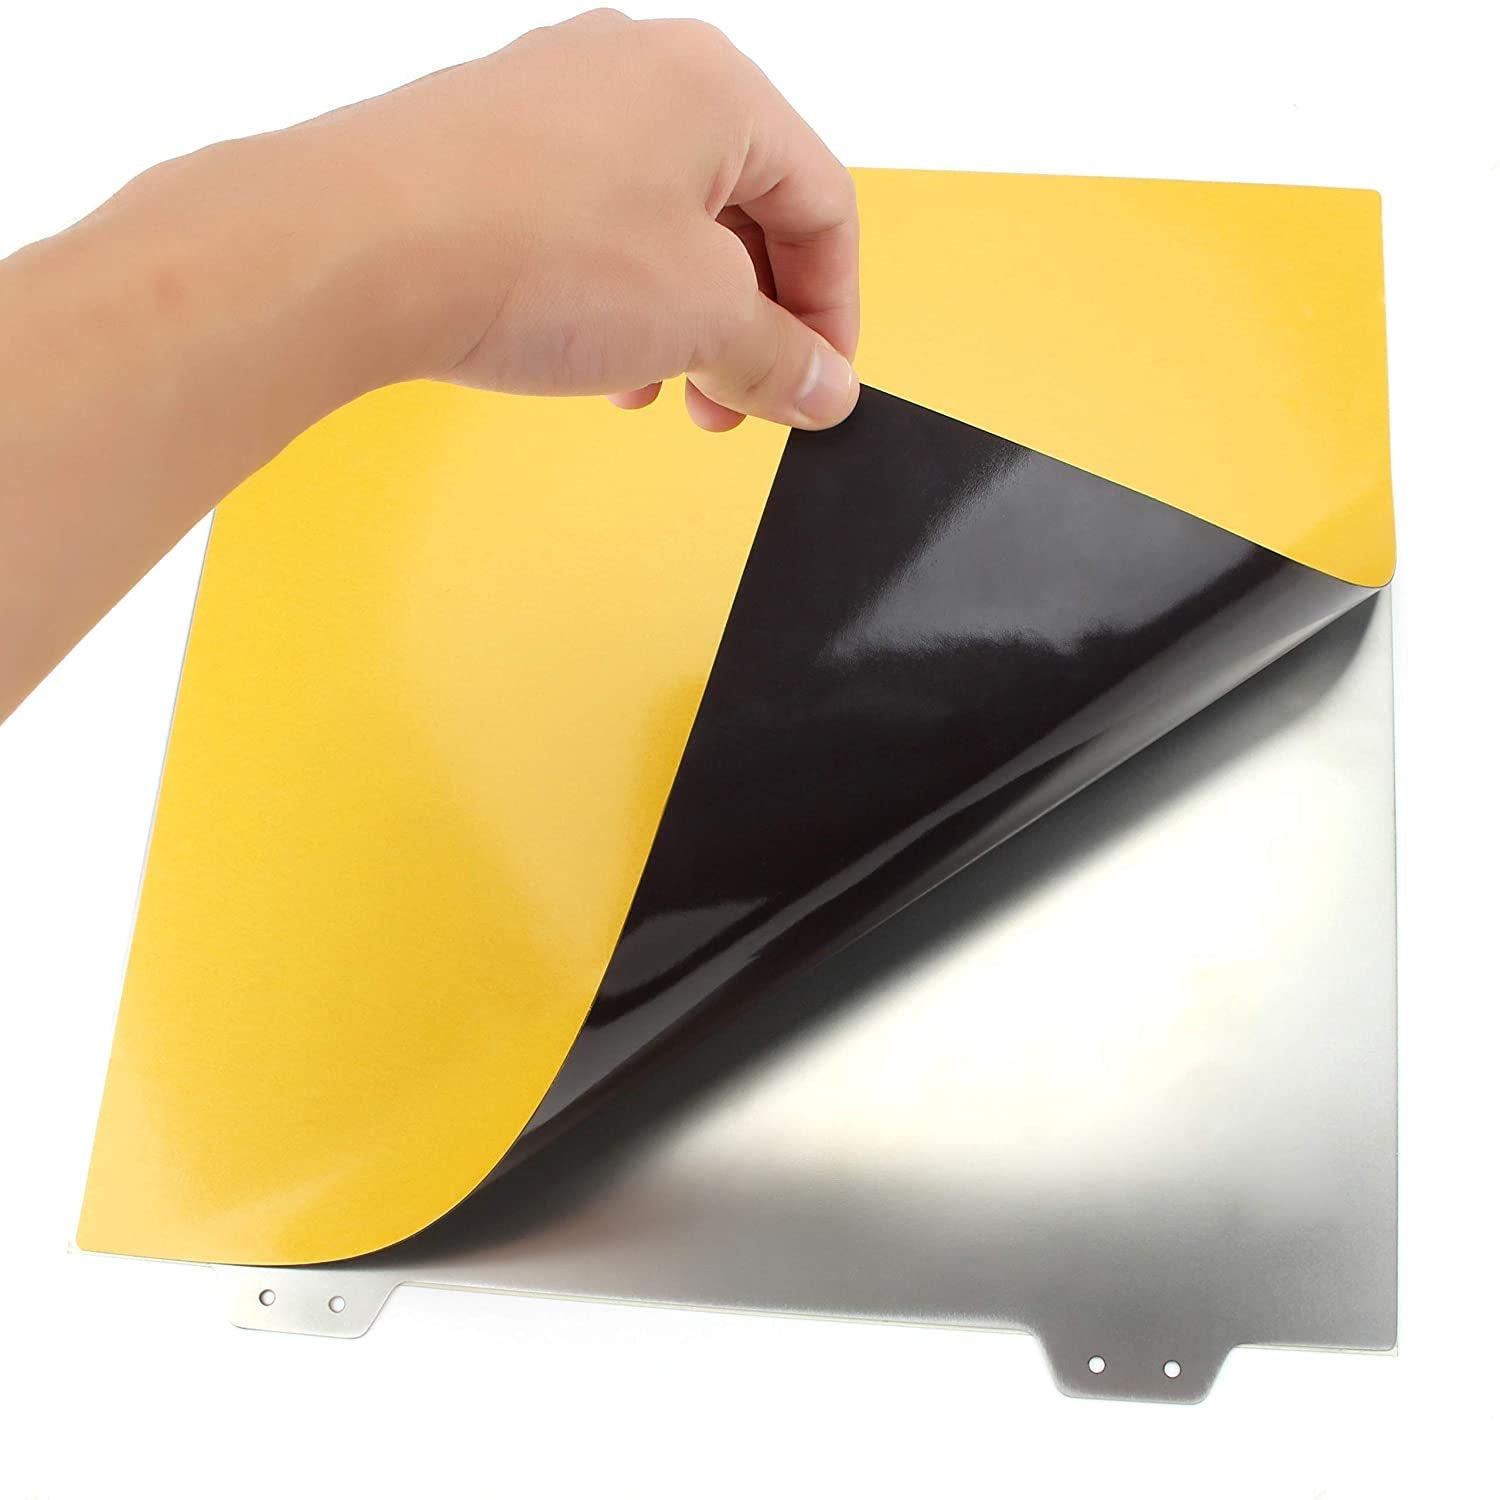 Flexible Magnetic Spring Steel PEI Plate for ELEGOO Neptune 3 Plus / Tronxy-X5S / Geeetech A30 Pro (330 x 330mm)